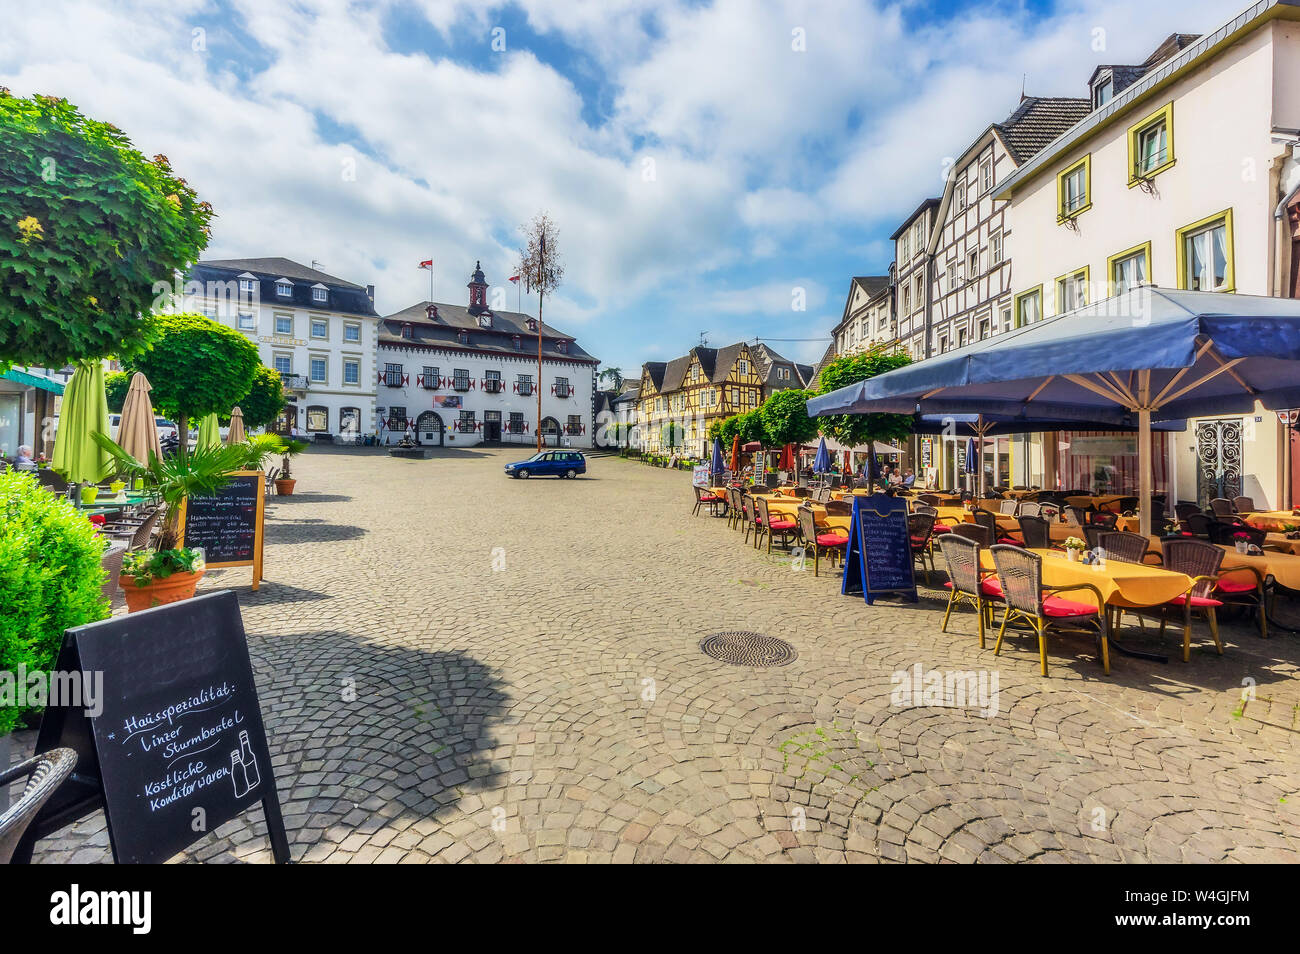 Allemagne, Rhénanie-Palatinat, Linz am Rhein, vieille ville, de la place du marché avec la fontaine et maisons à colombages Banque D'Images